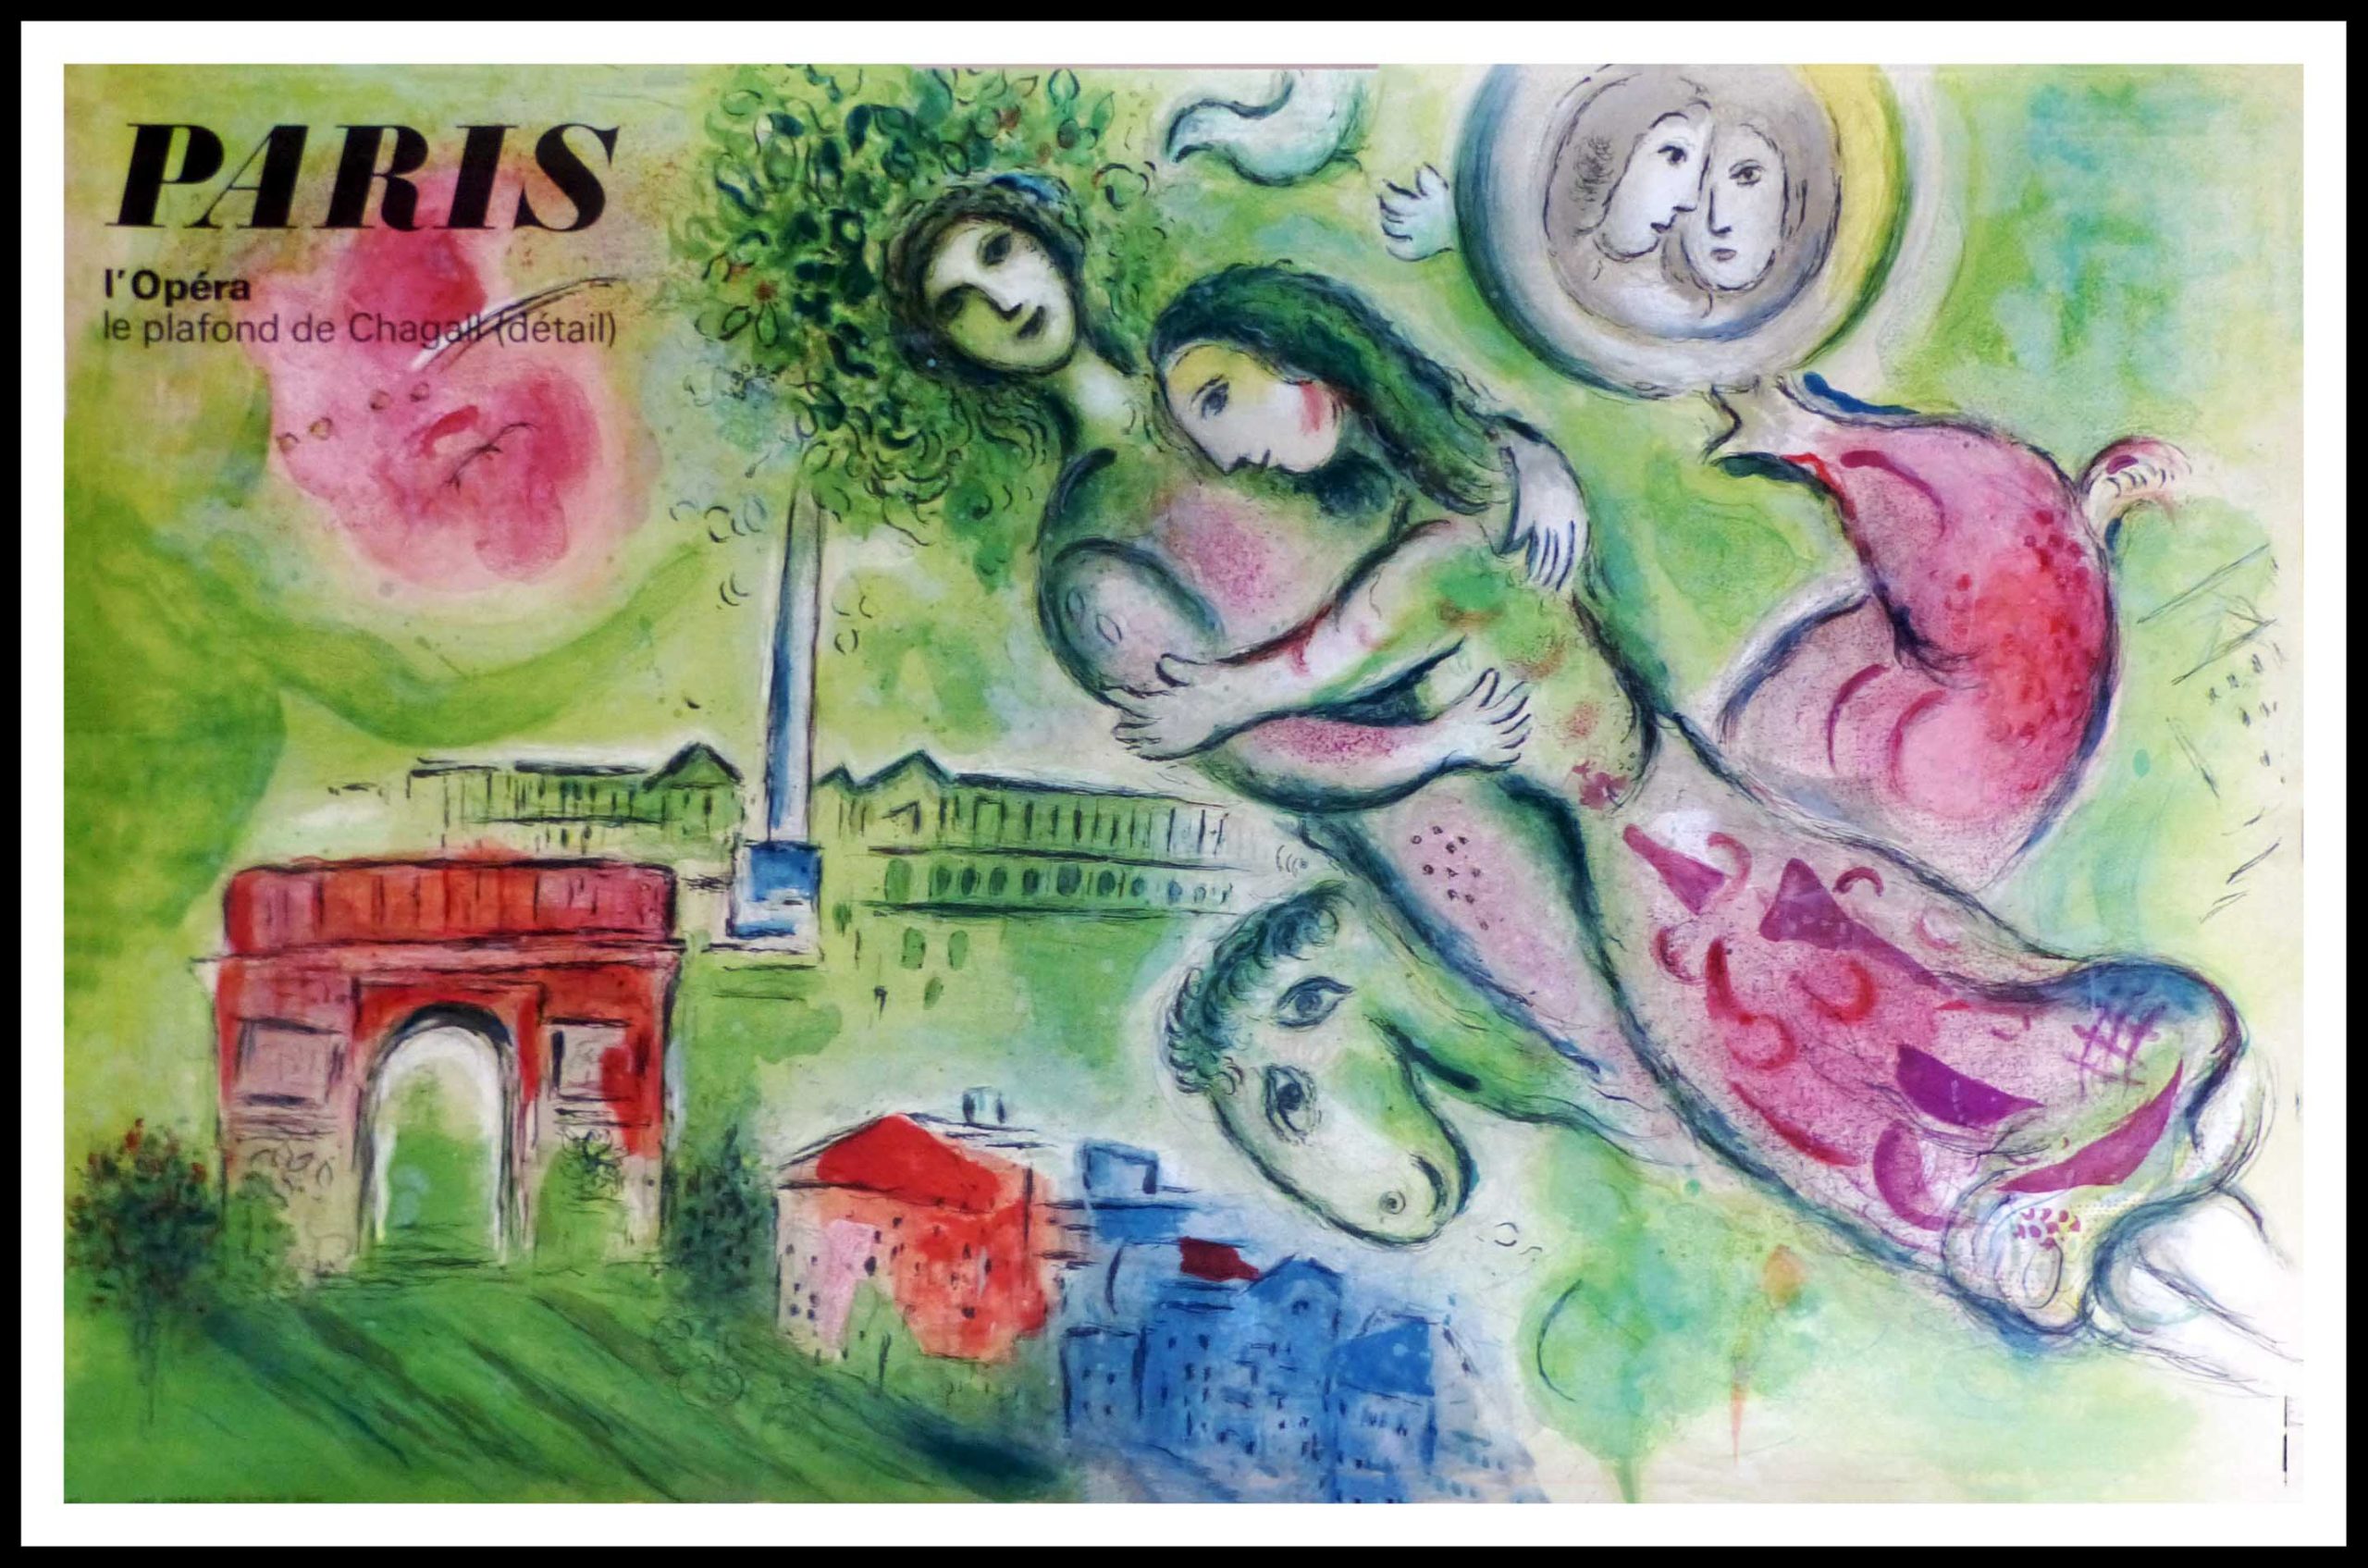 PARIS l'Opéra le plafond de Chagall 101 x 65 cm condition A+ 1964 Imprimé par Mourlot 5000 copies